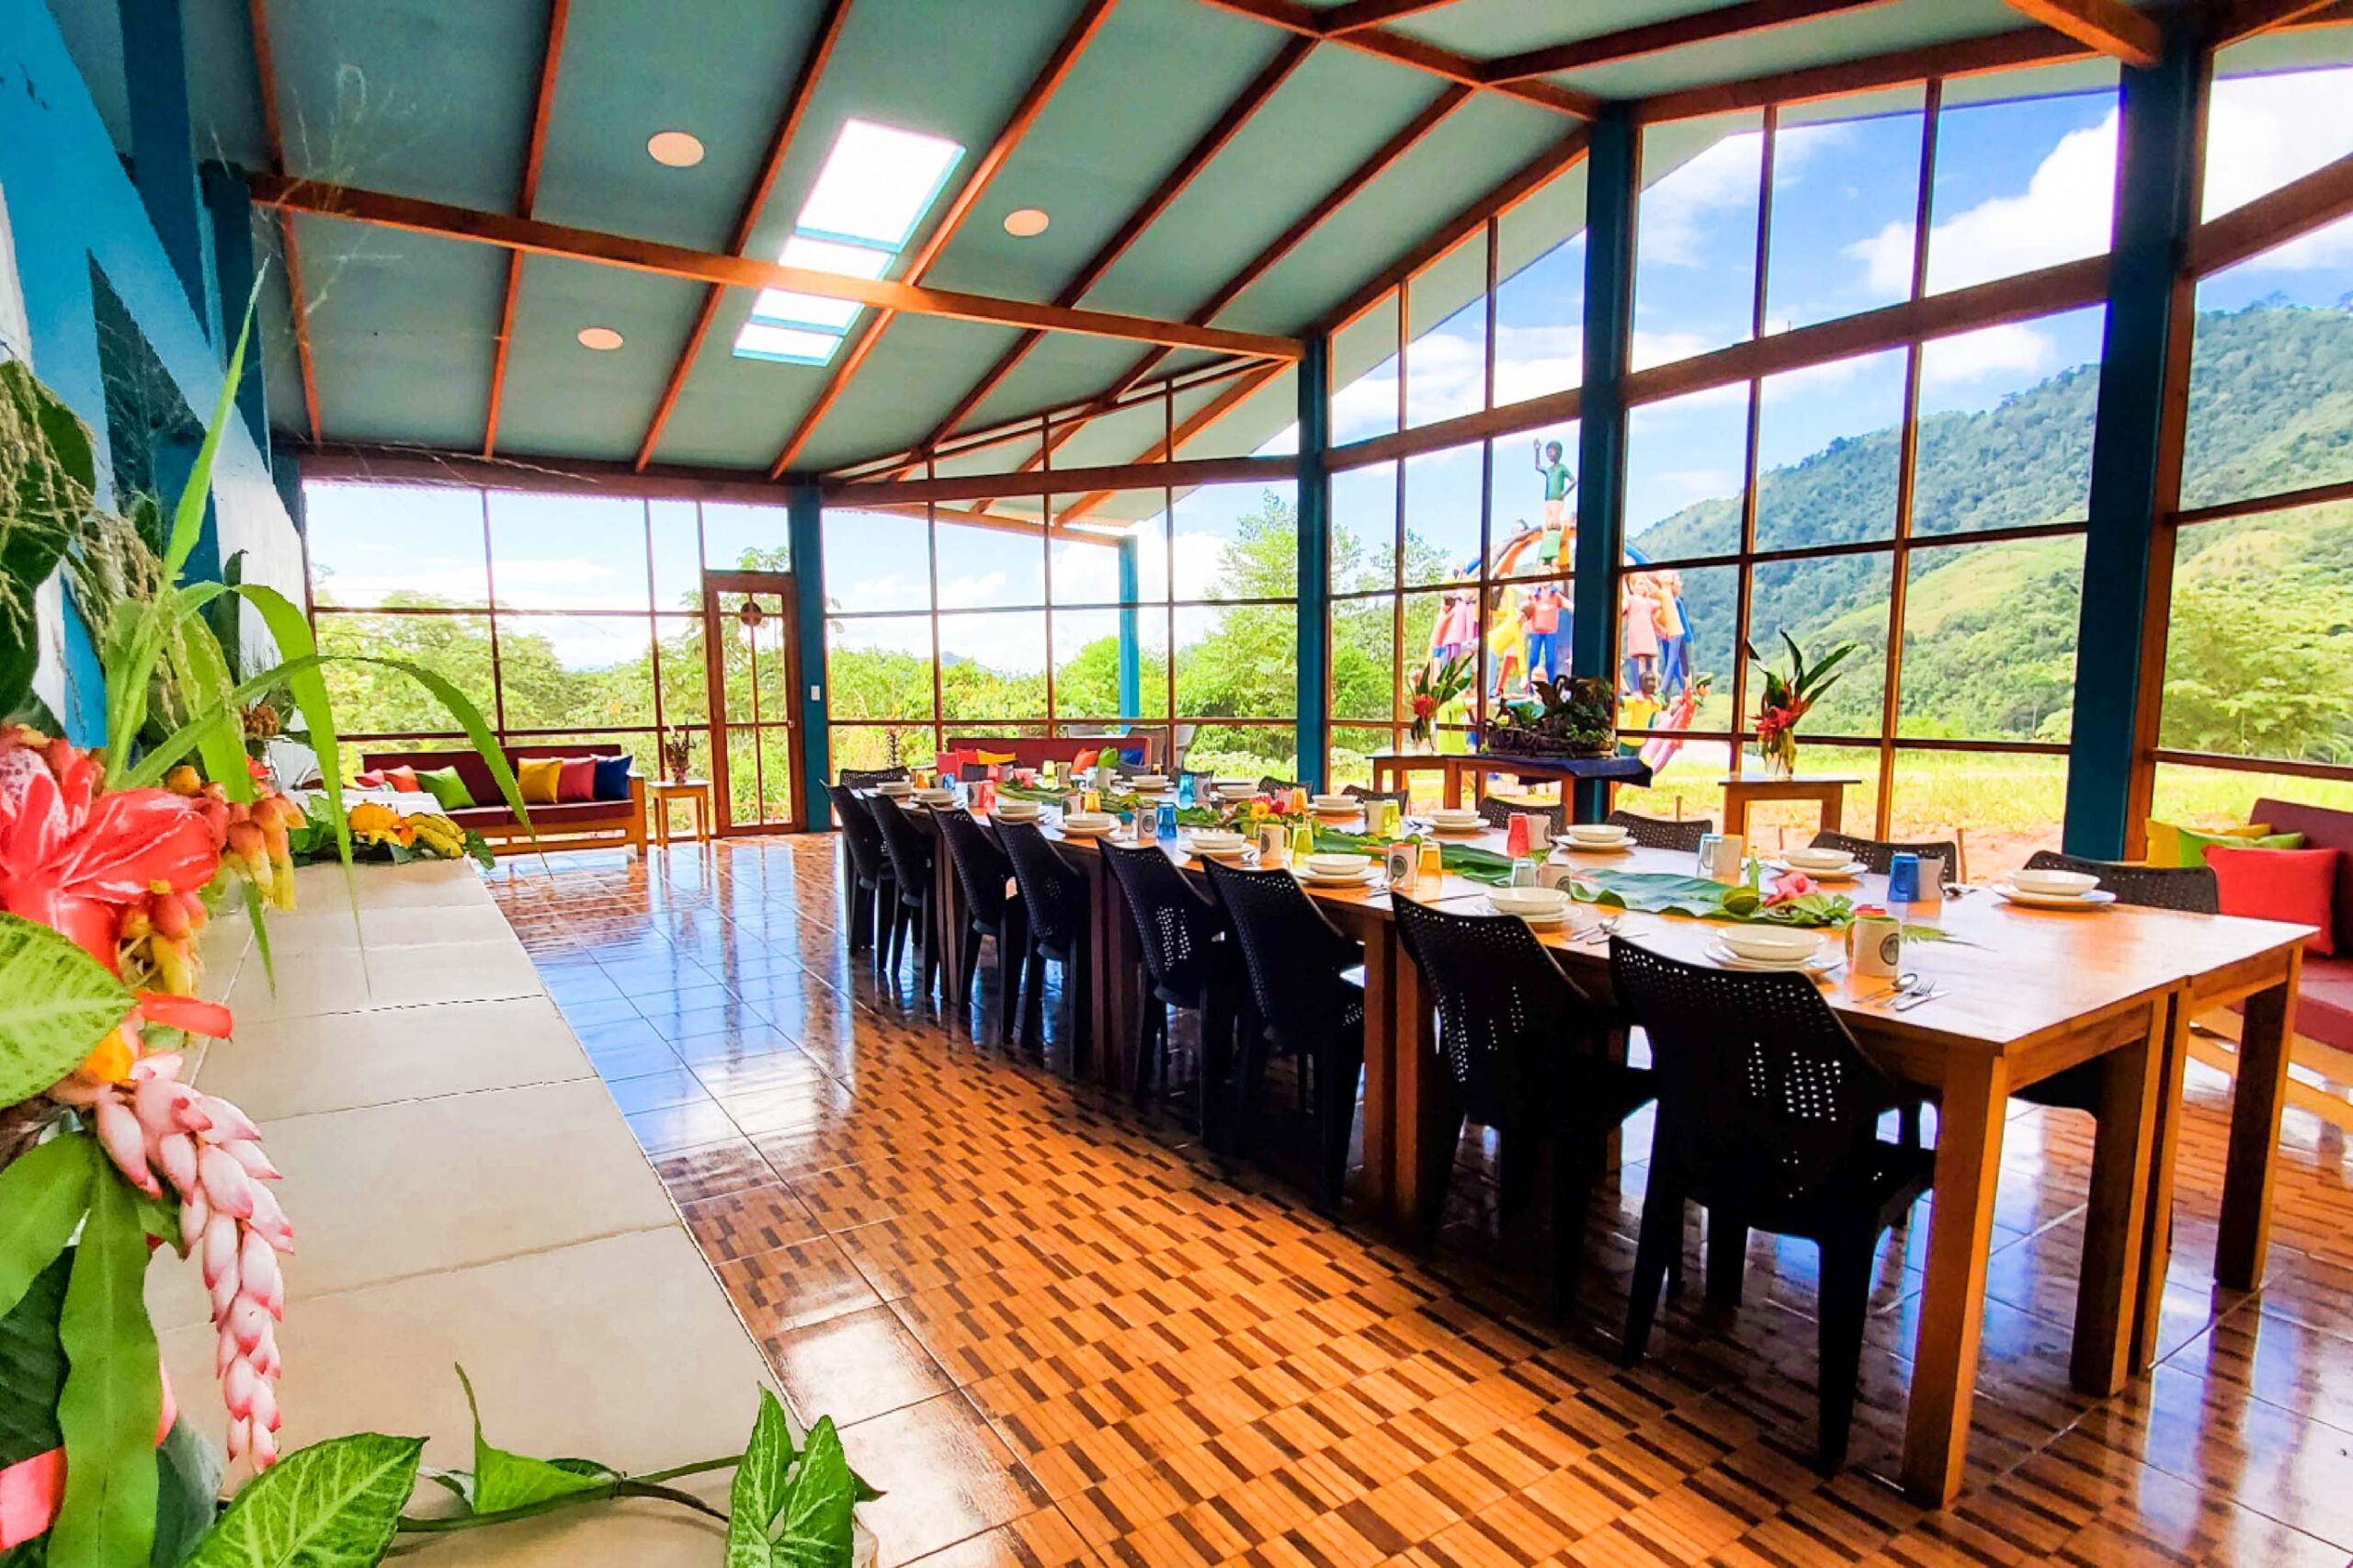 Dining/living room in Pueblo Colorado San Martin Peru